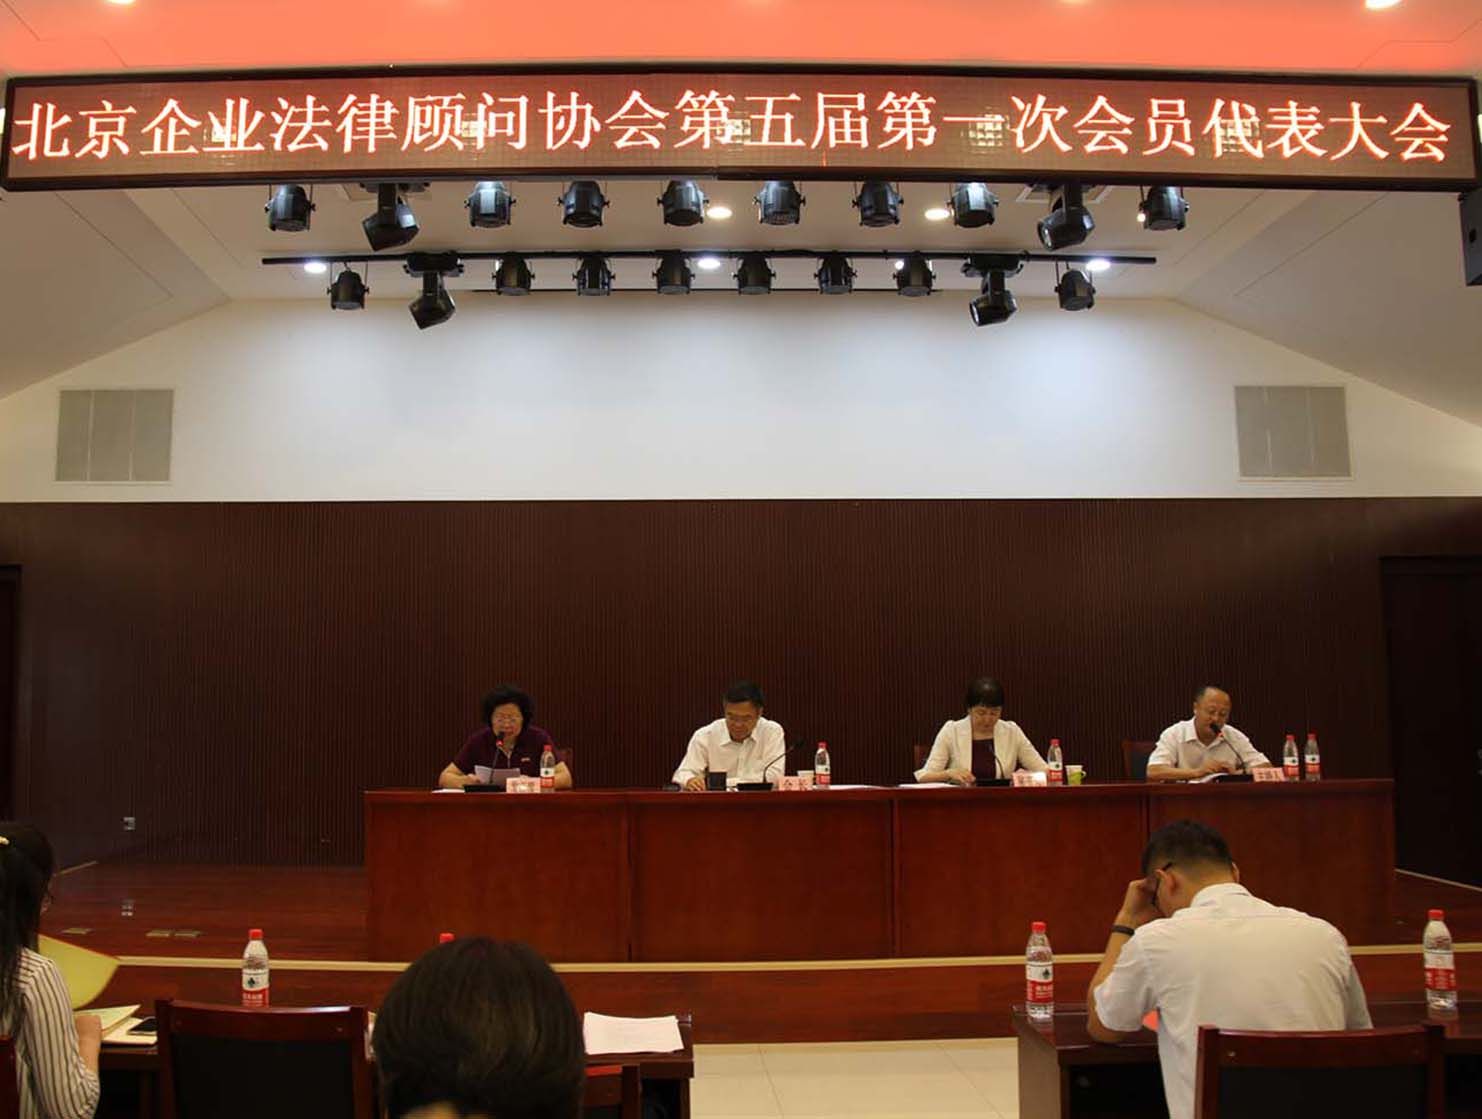 北京企业法律顾问协会于2019年9月6日召开了第五届换届会员代表大会